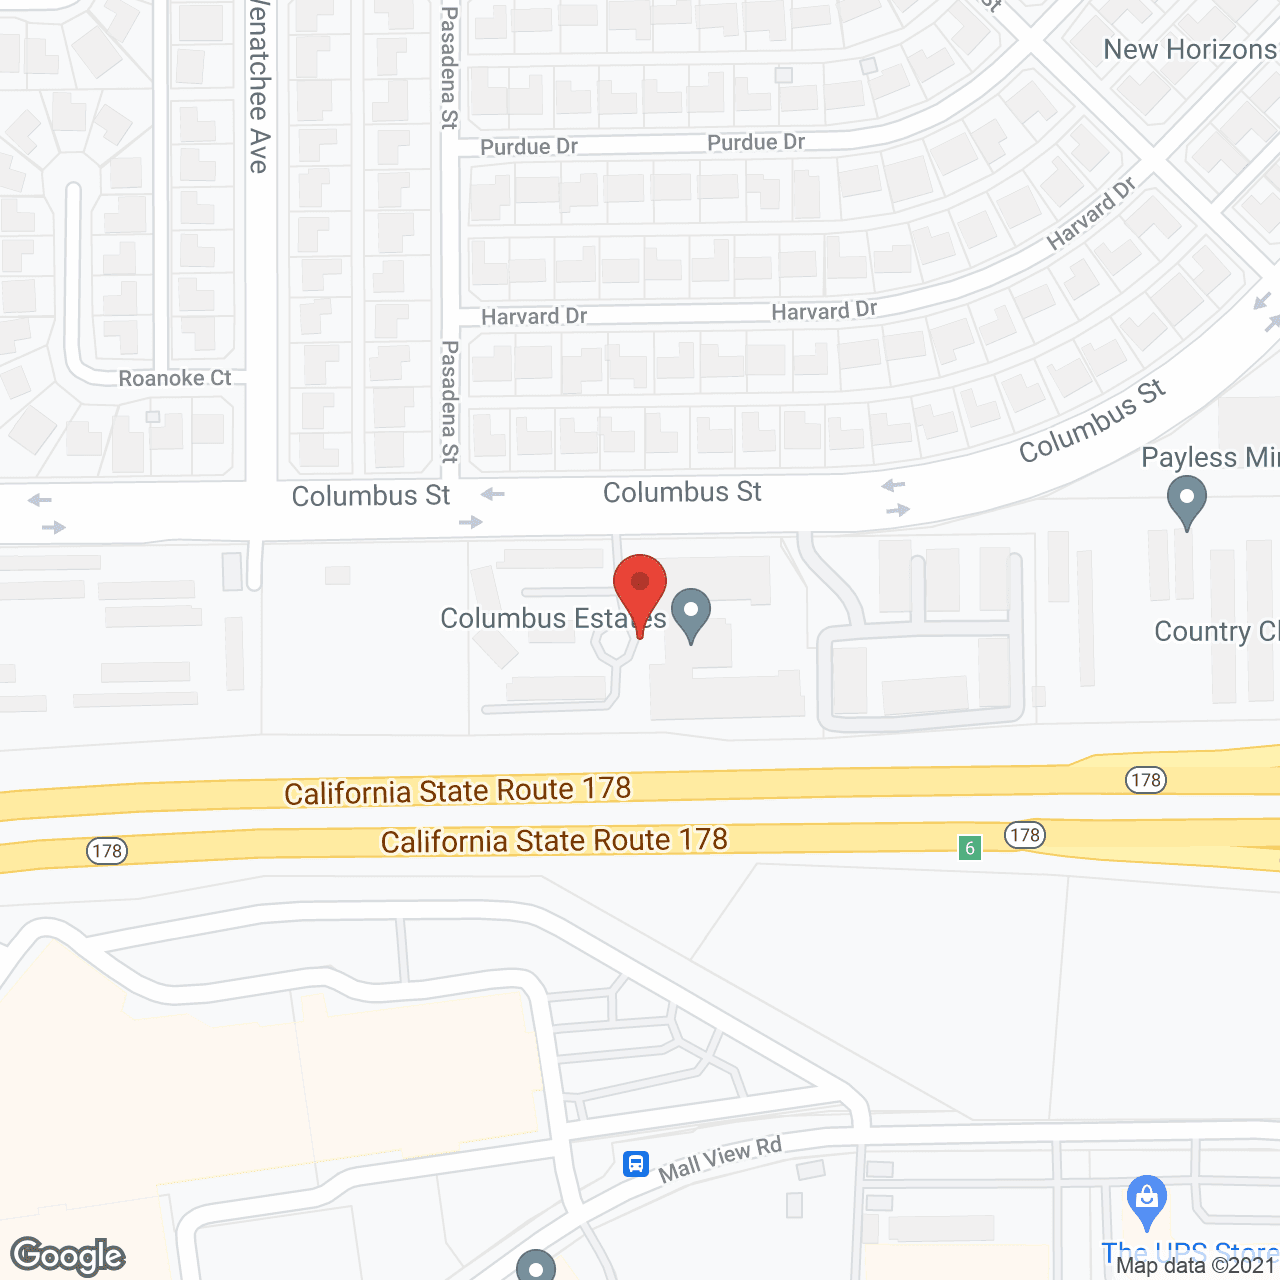 Columbus Estates in google map